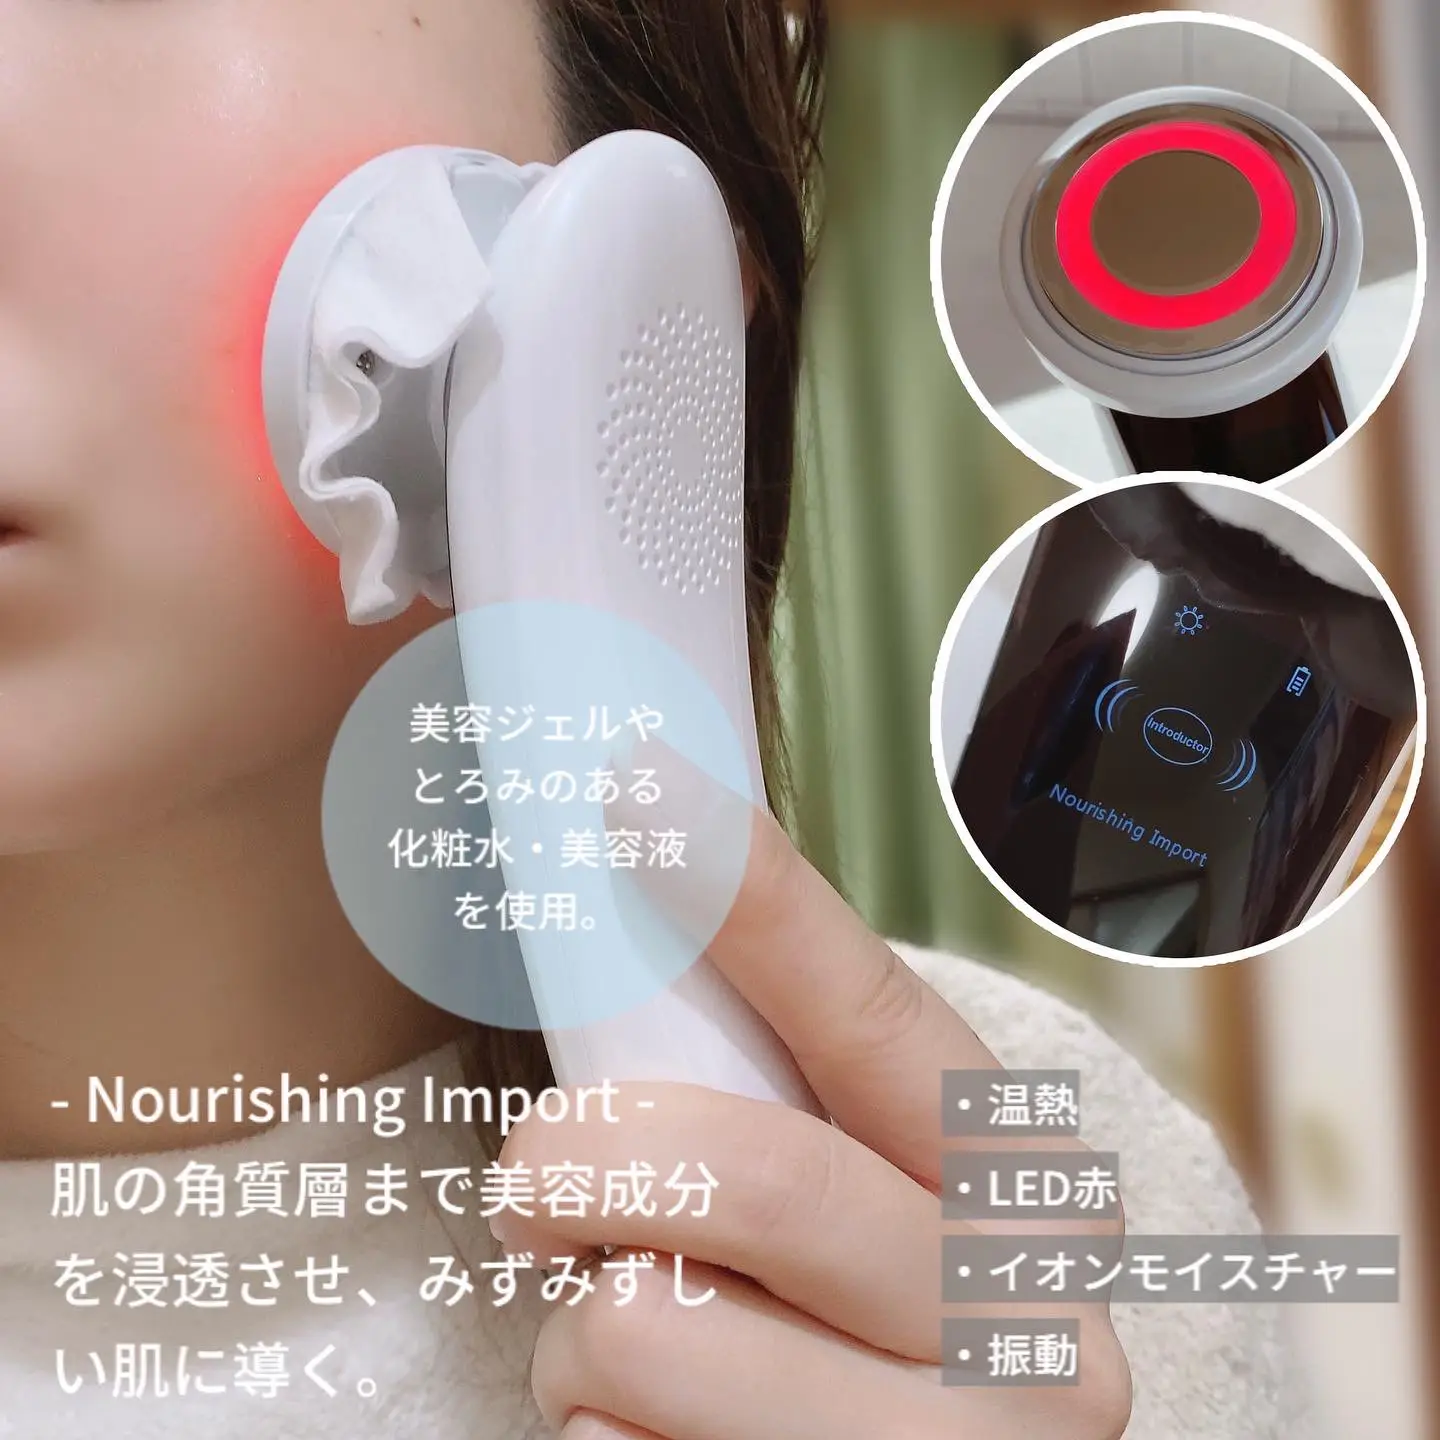 【新品未開封】AIMUSE 多機能美顔器 毛穴ケア イオン導入